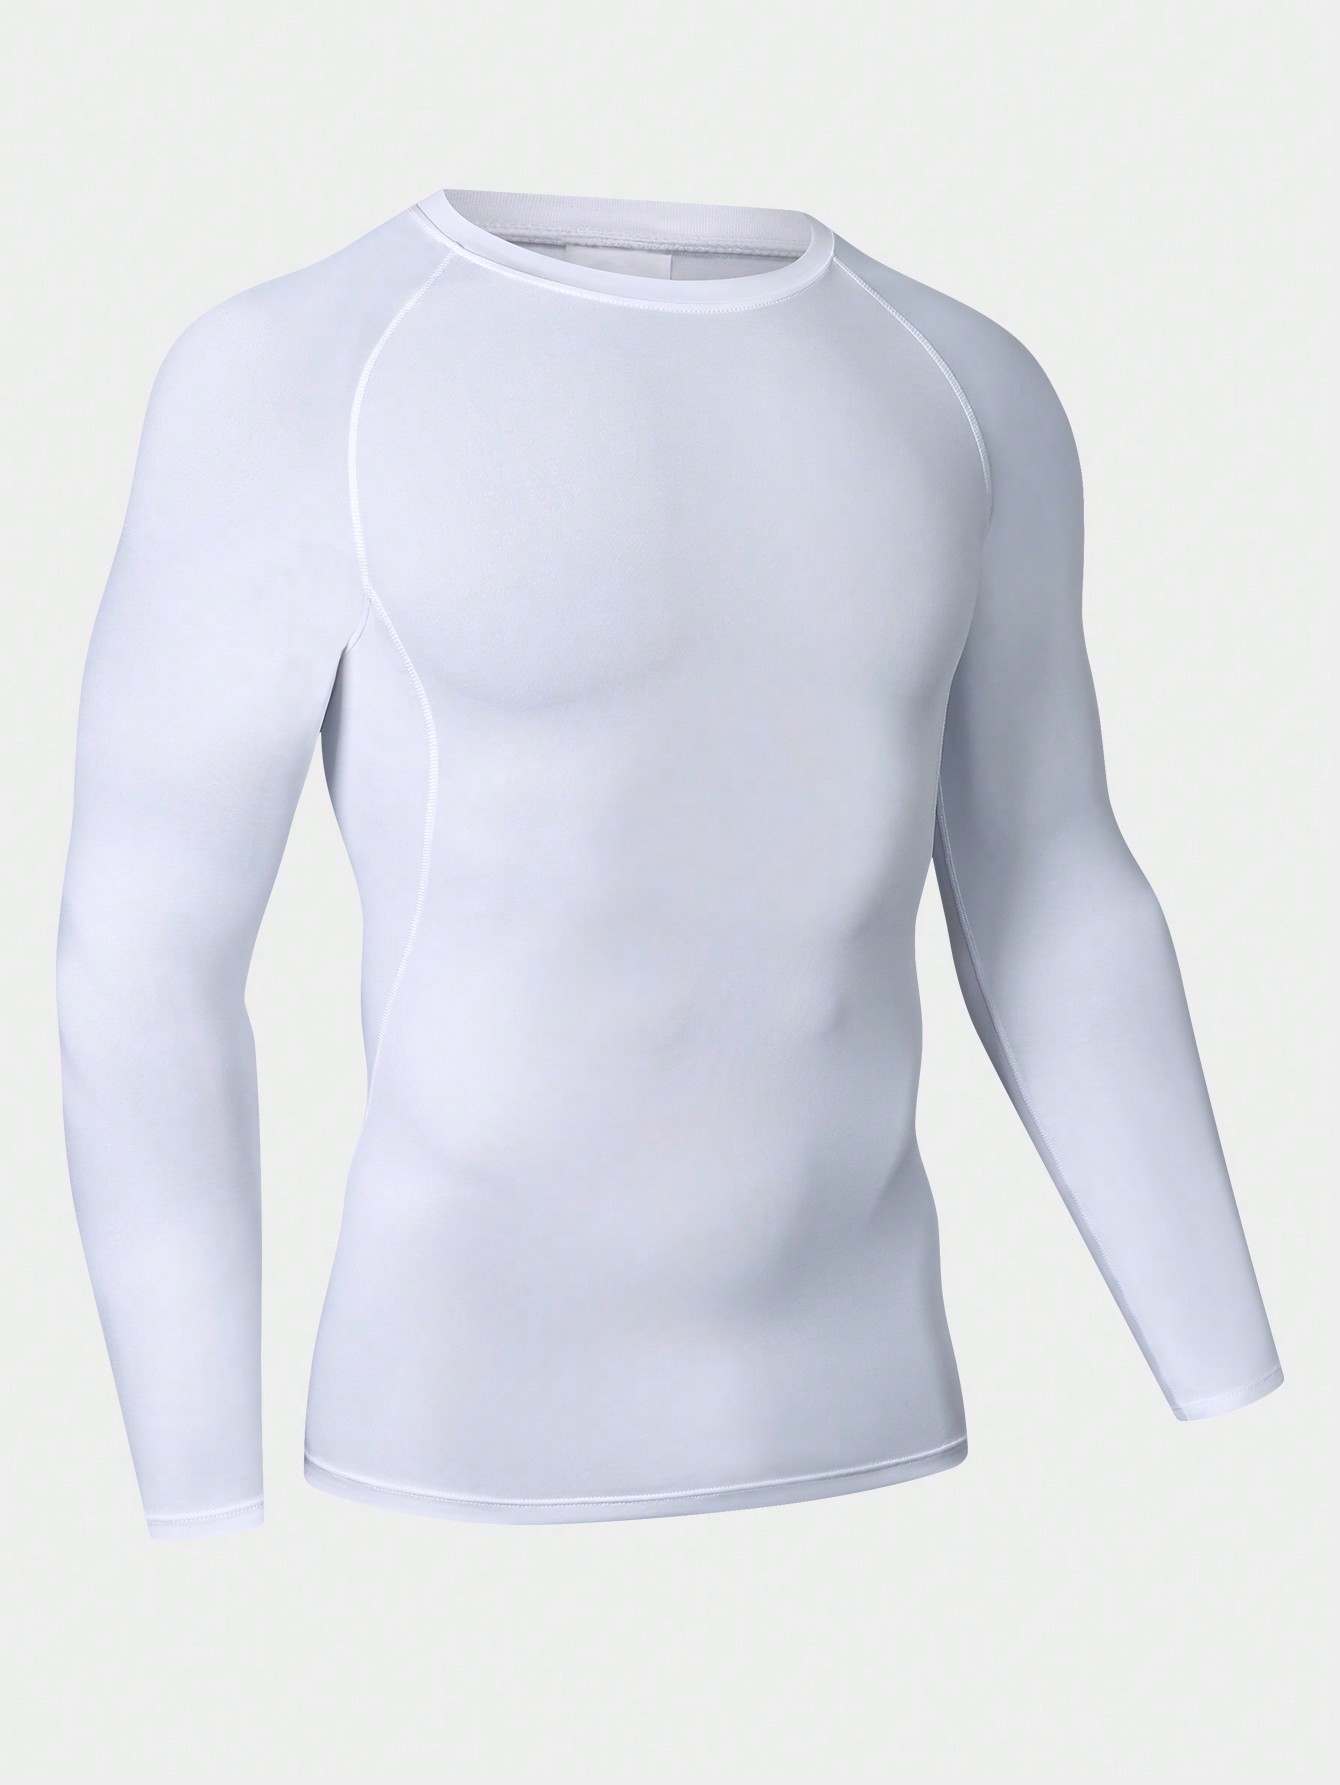 Мужская эластичная компрессионная рубашка для фитнеса с длинными рукавами, белый